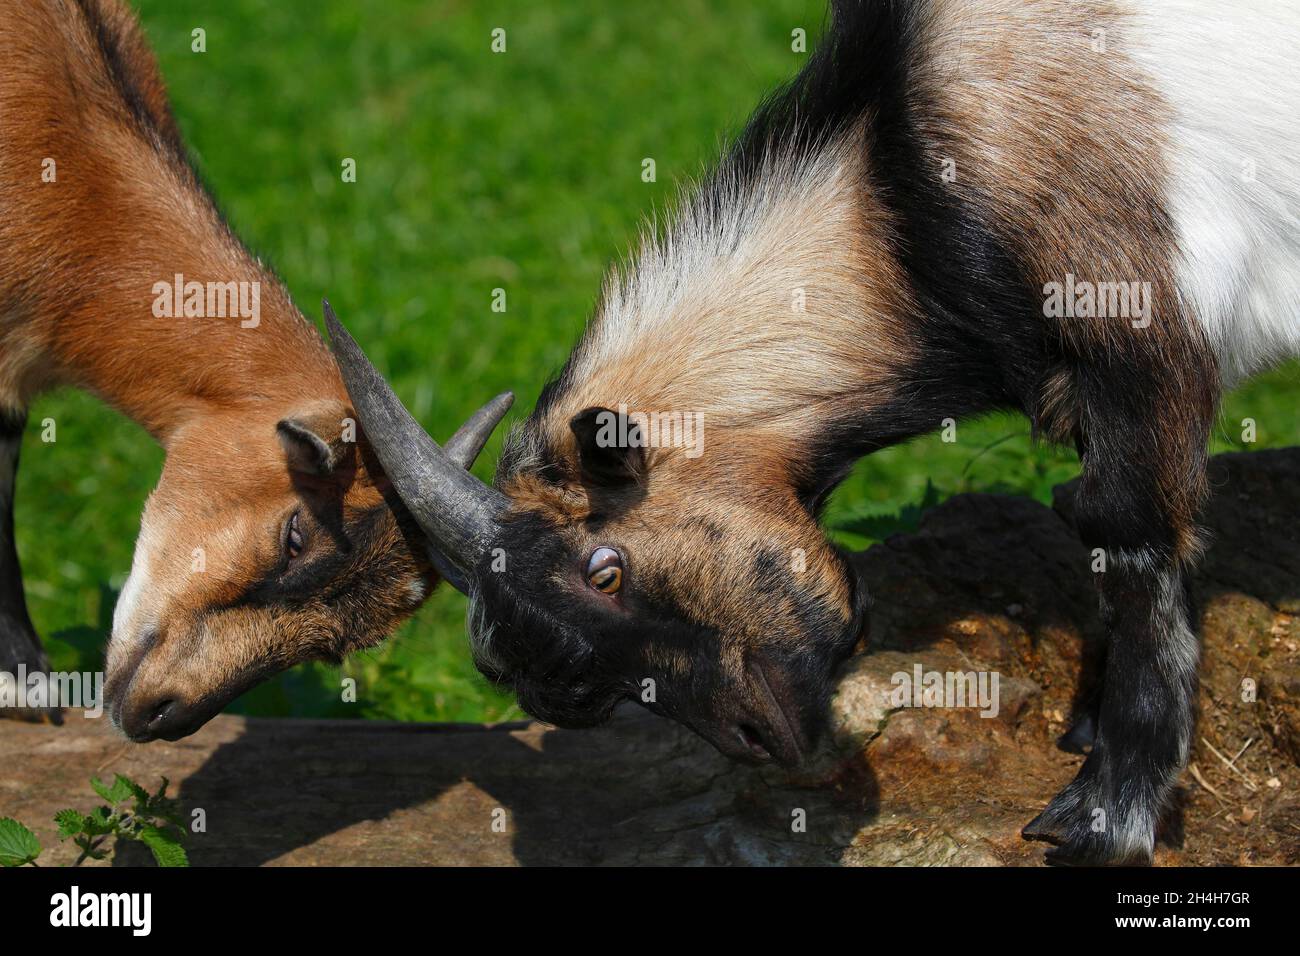 Dwarf goats, Schleswig-Holstein, Germany Stock Photo